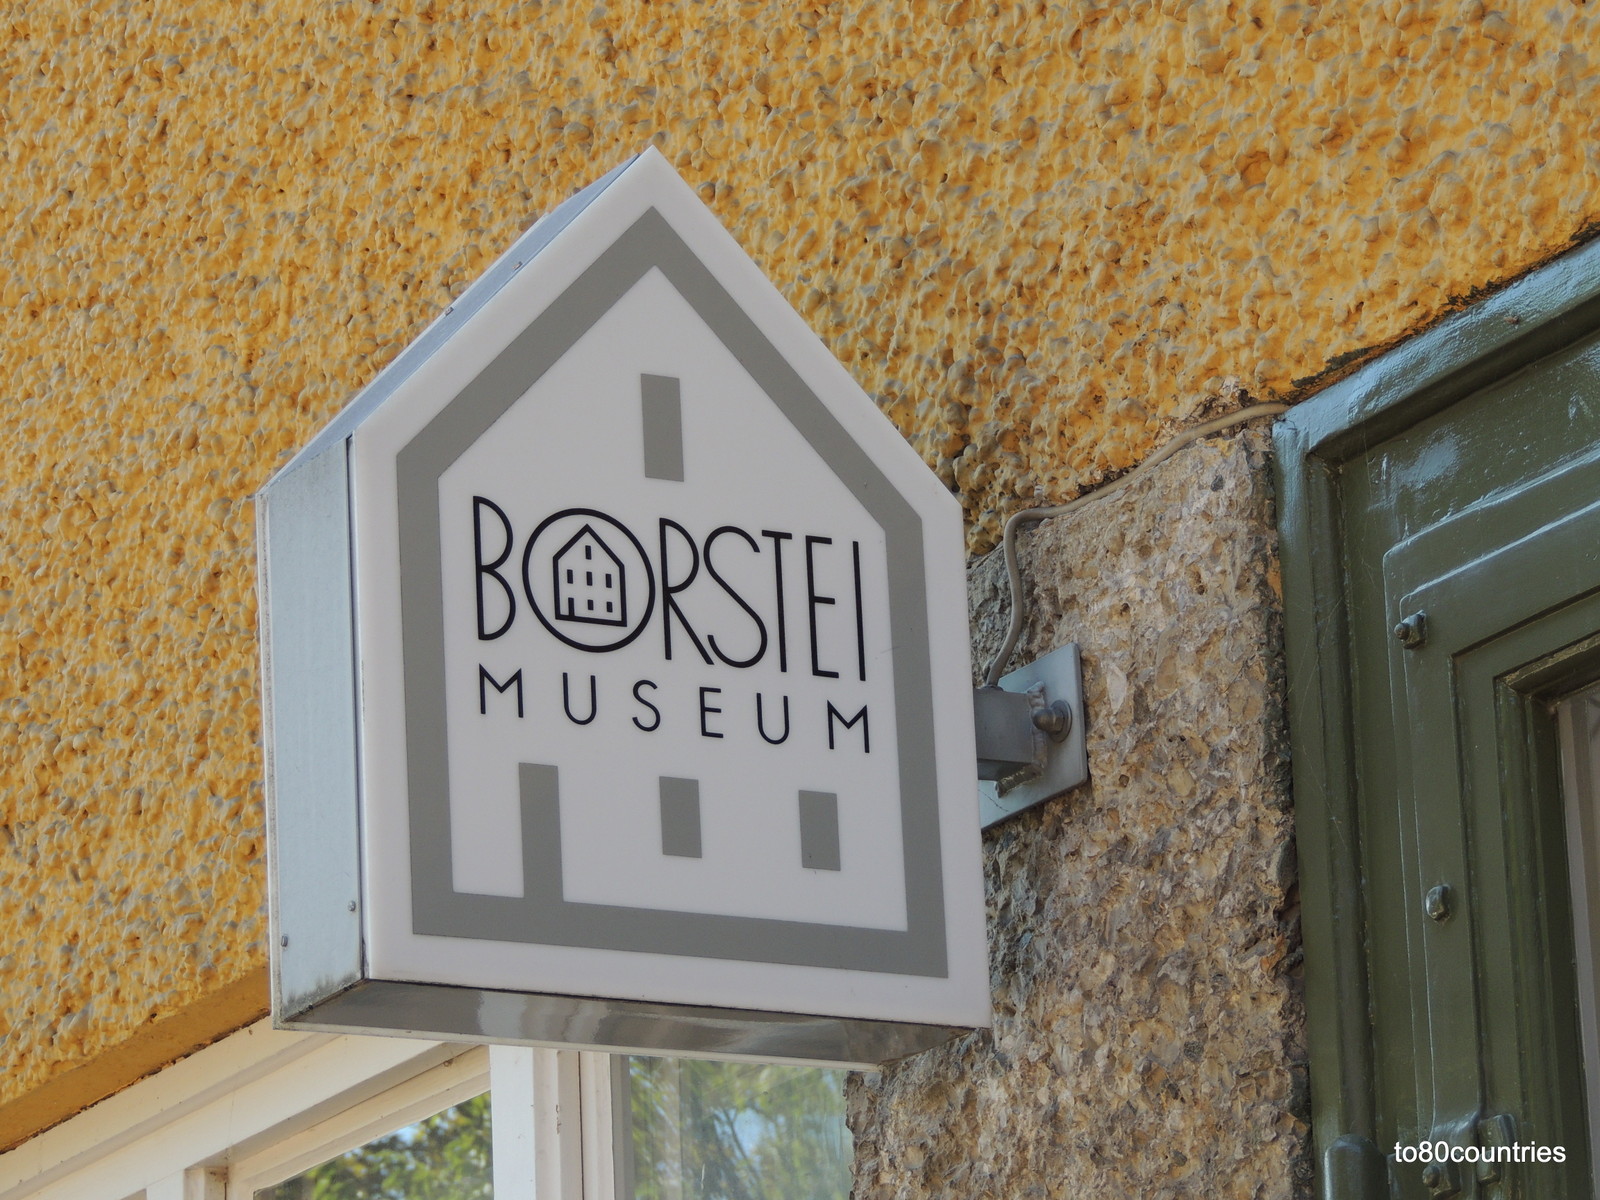 Borstei Museum